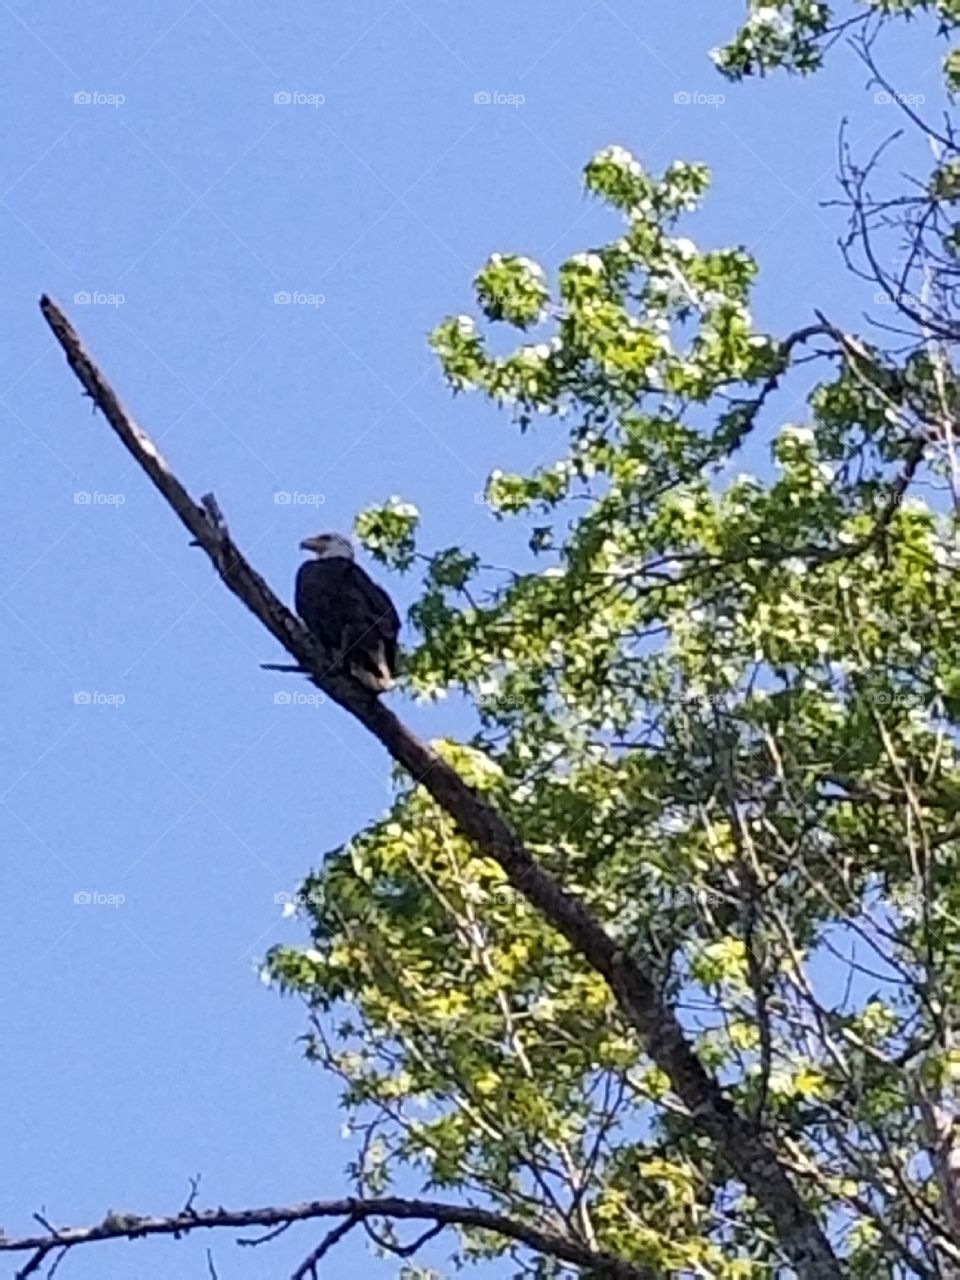 Georgia eagle